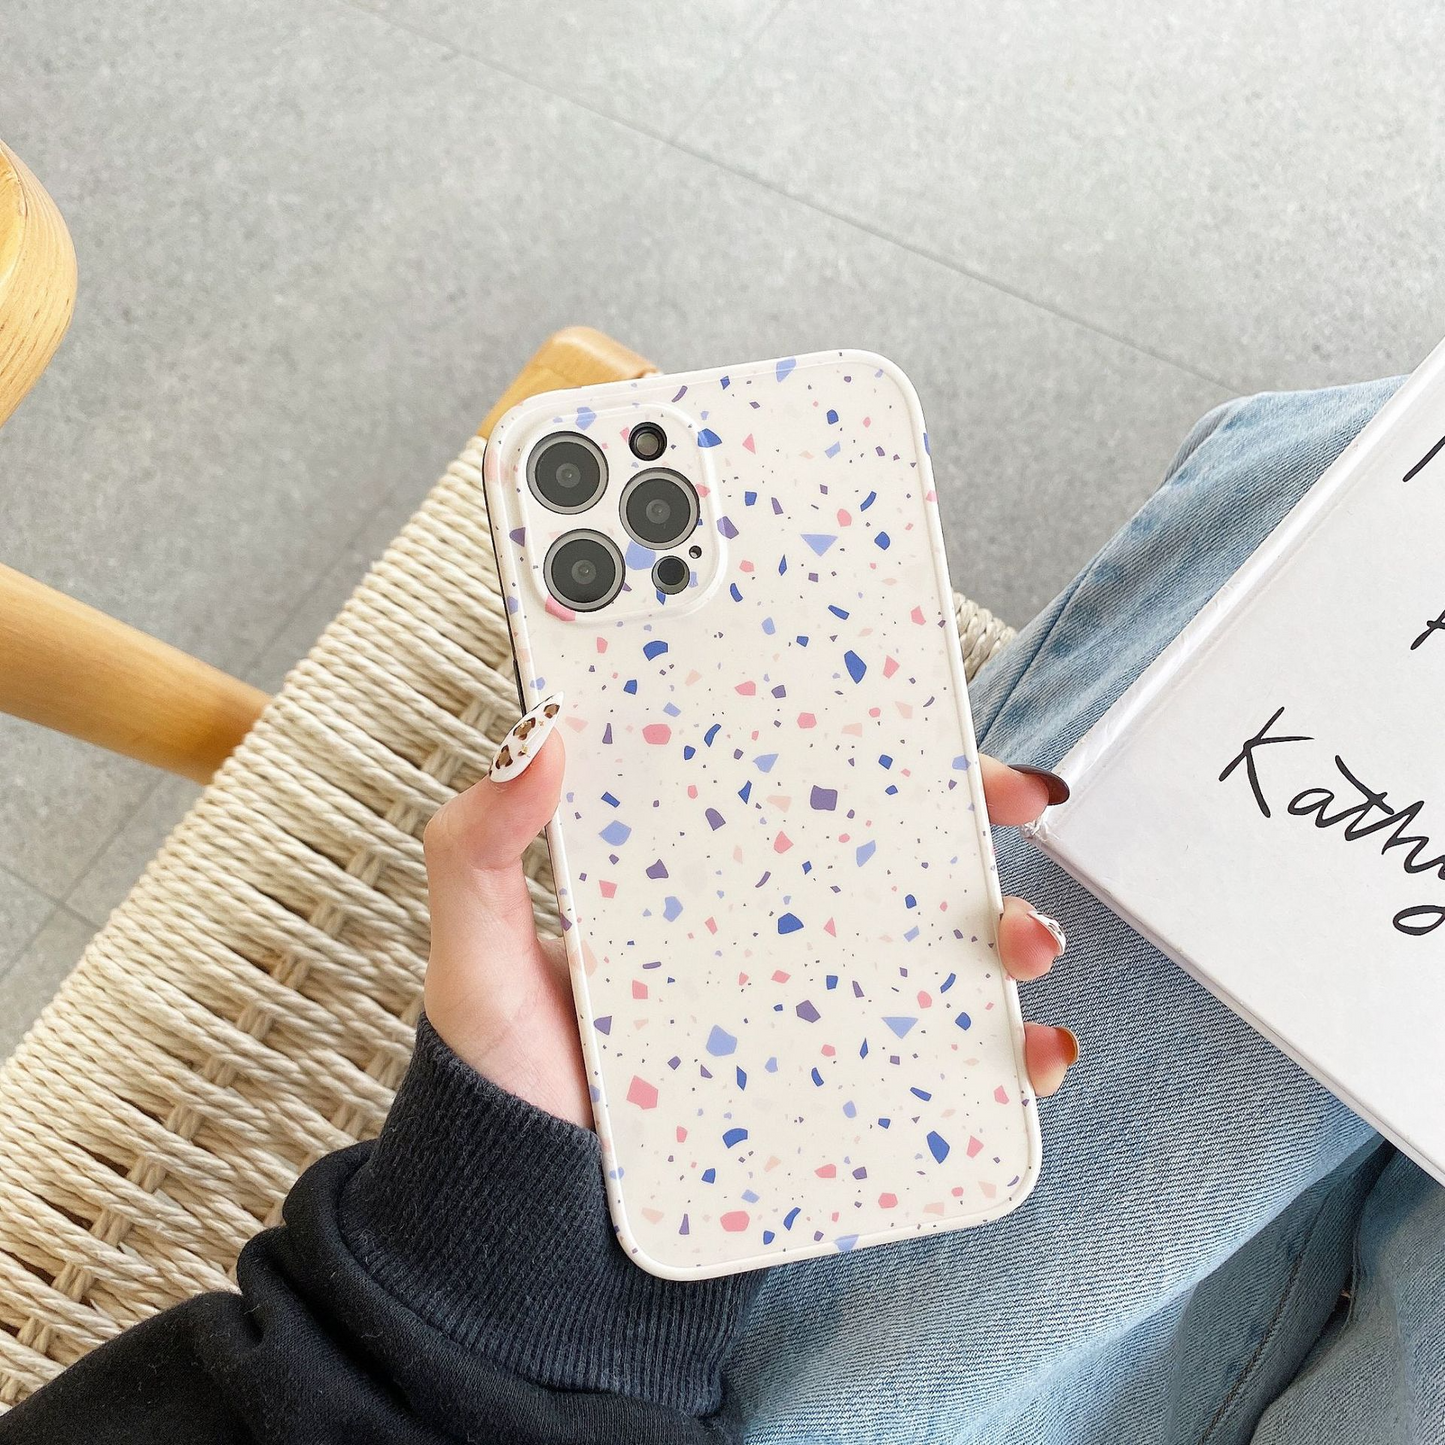 Speckled Tile Pattern iPhone Case (2 Designs)